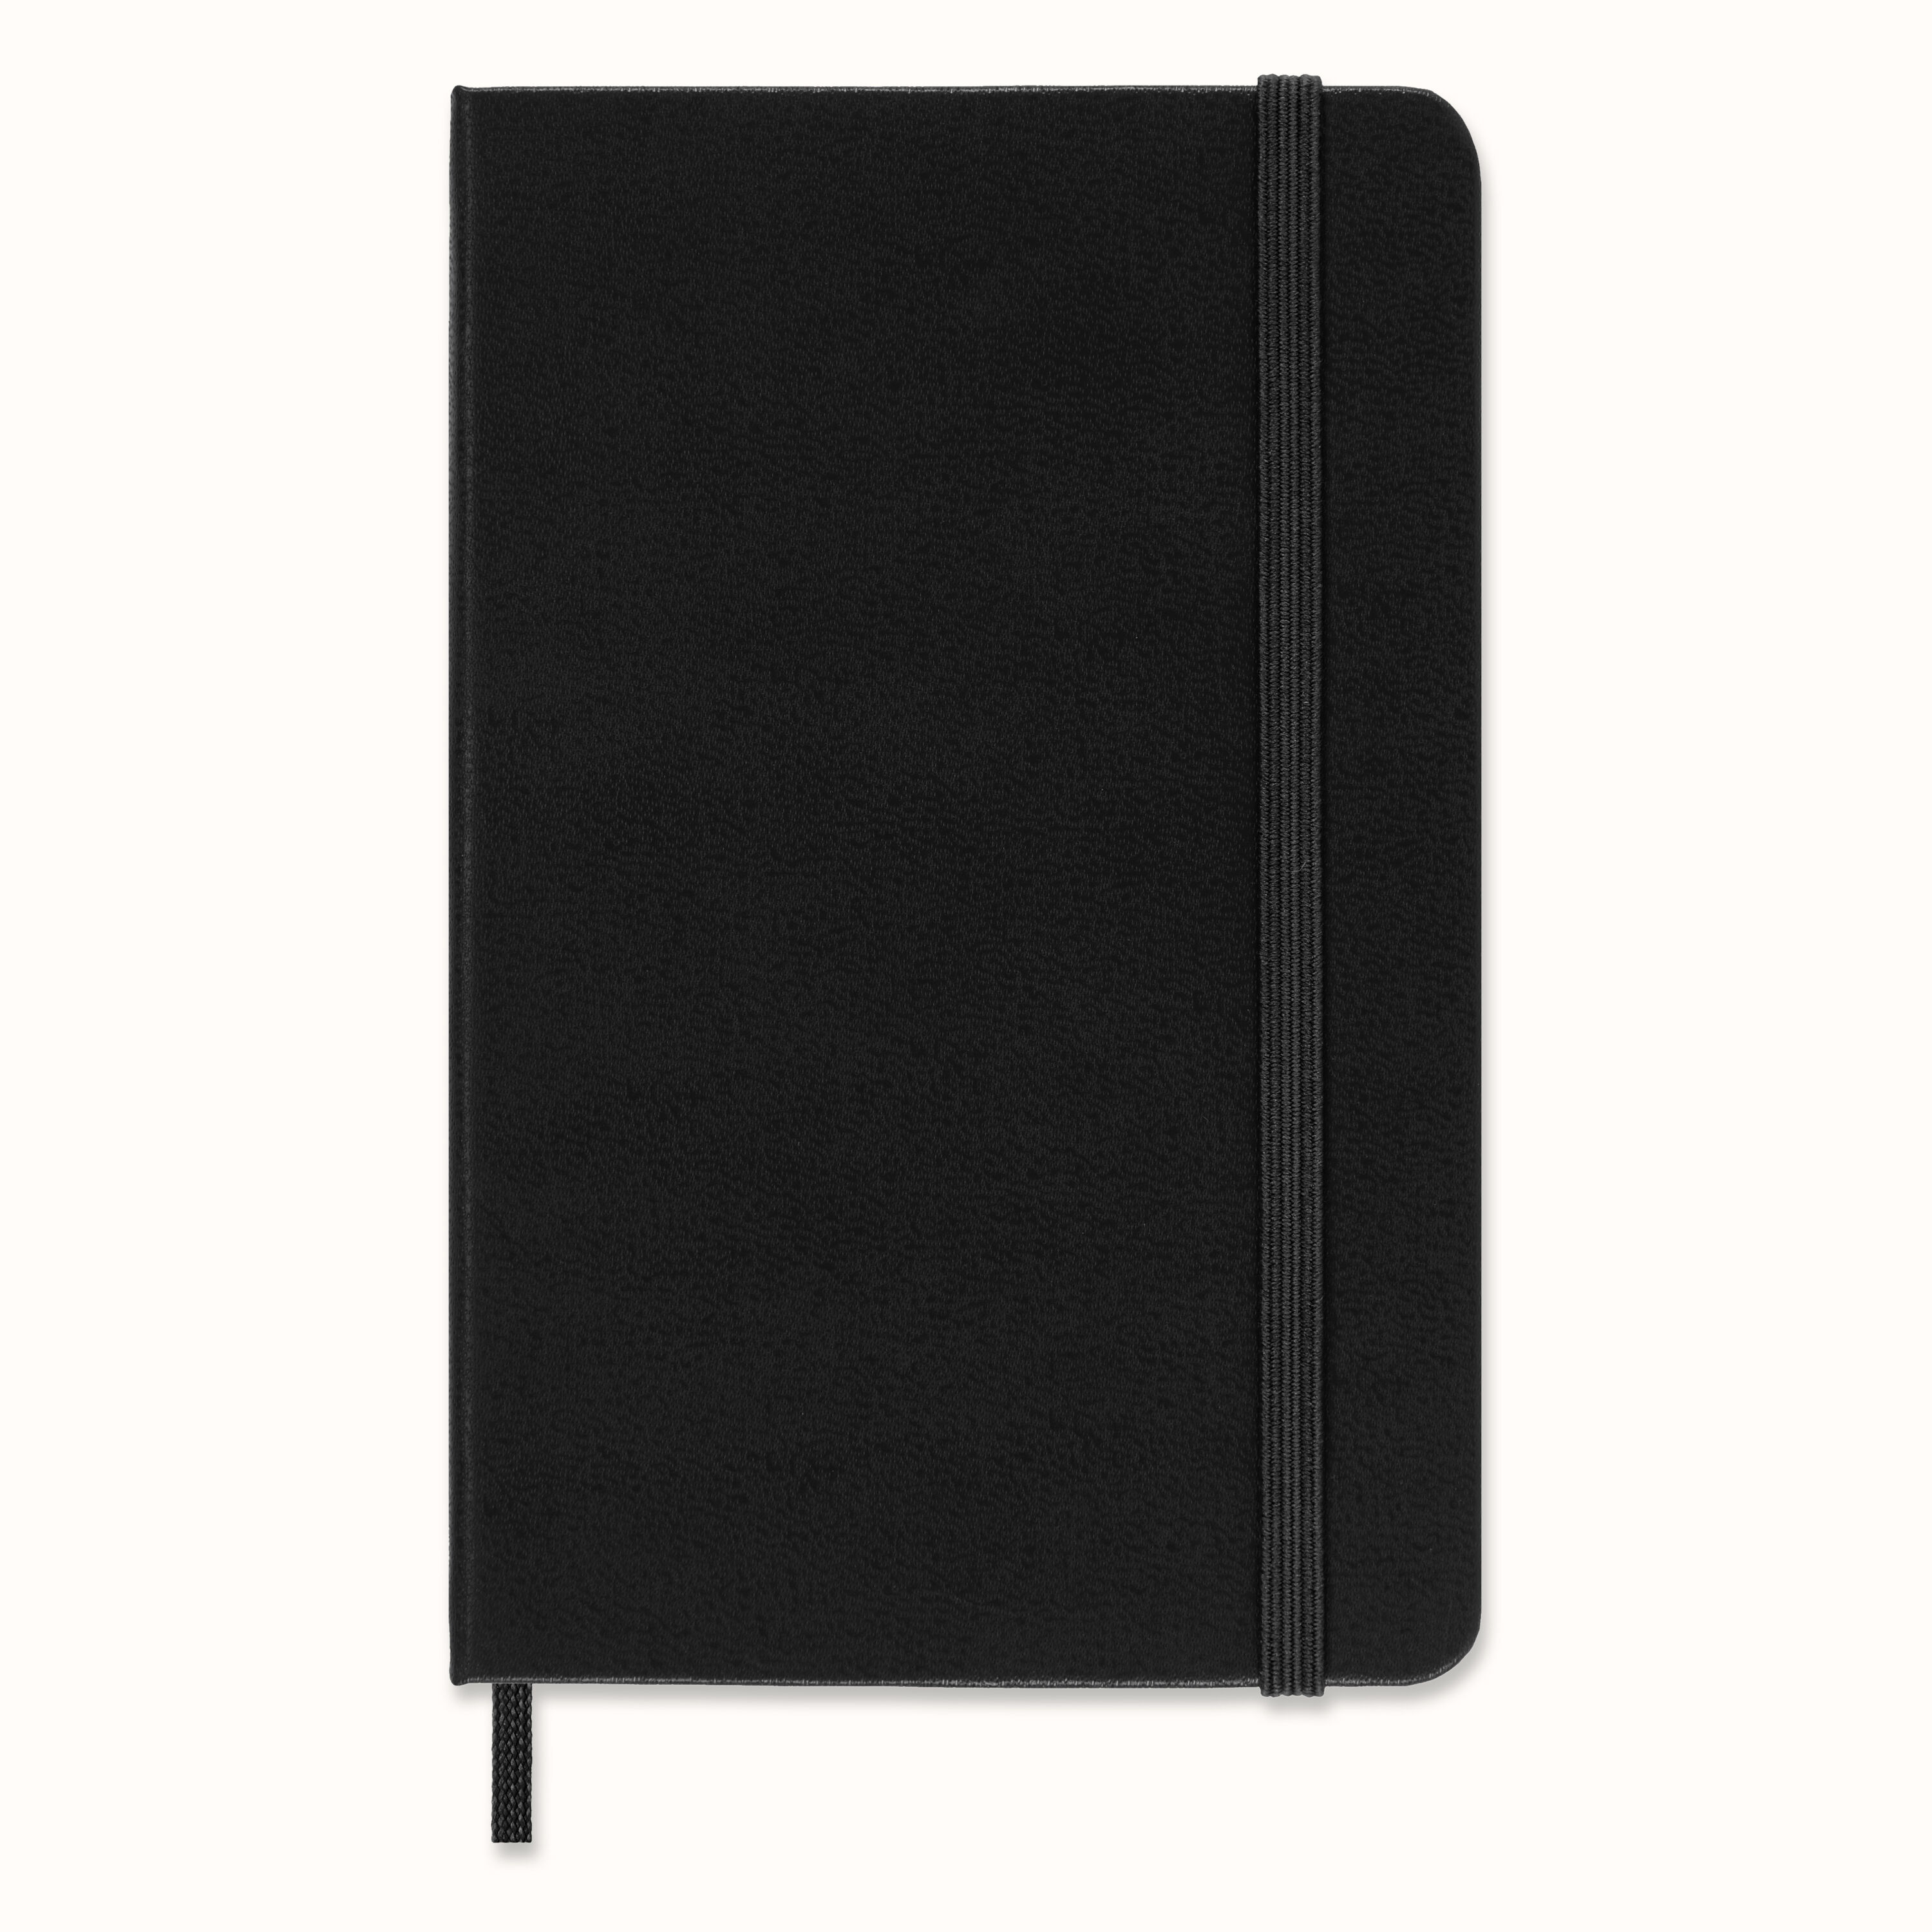 Taschengröße 9x14 cm horizontales Layout Hardcover und elastischer Verschluss 2021 2022 Monatliches Tagebuch deutsche Version schwarze Farbe Moleskine 